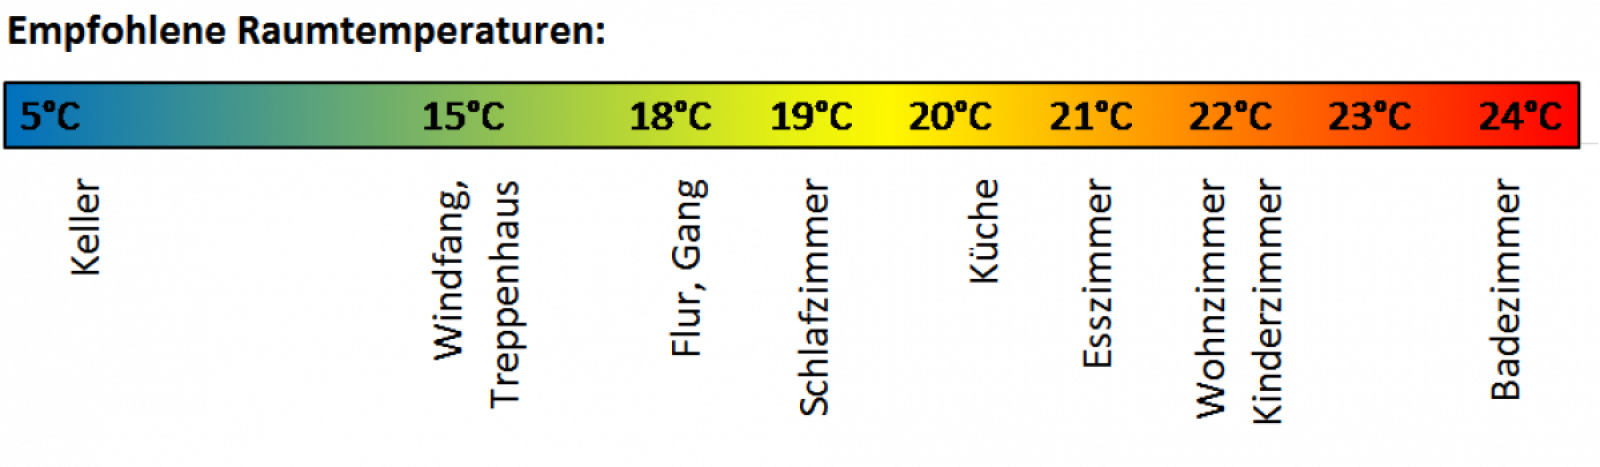 Grafikleiste mit den empfohlenen Raumtemperaturen für die einzelnen Räume eines Wohnhauses